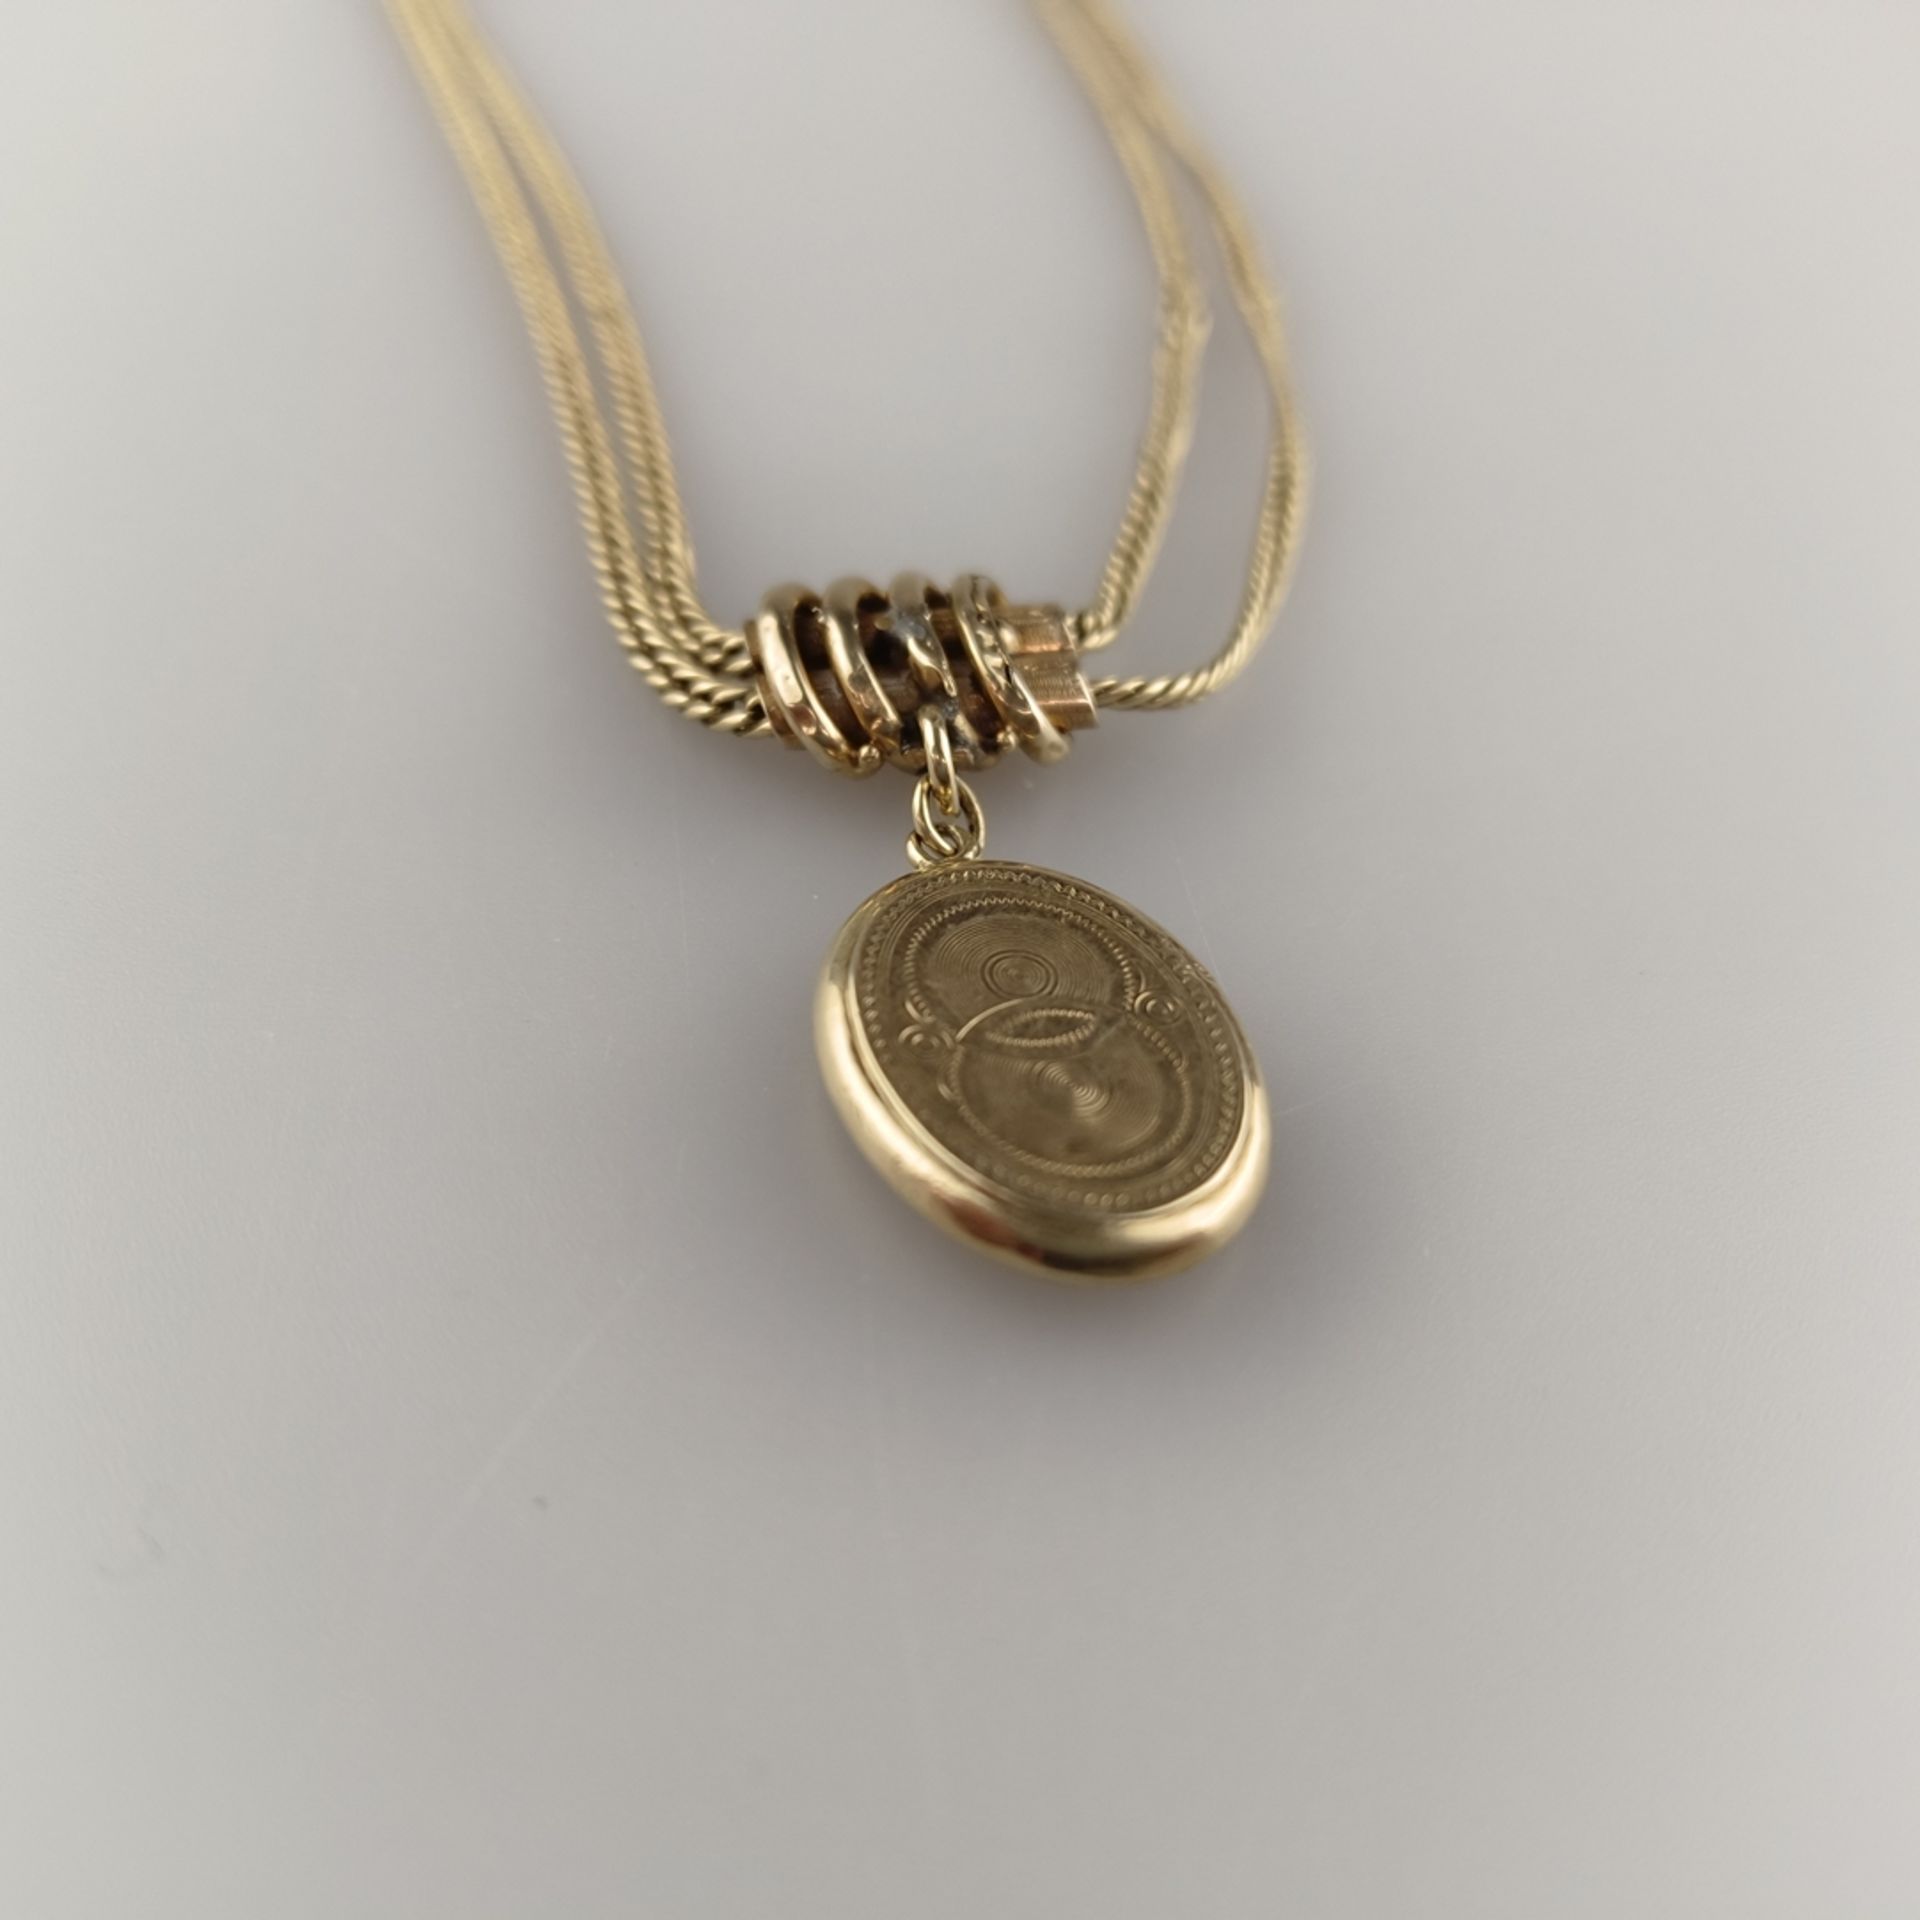 Taschenuhren-Knebelkette - 14K Gelbgold (585/000), mit ovalem Medaillonanhänger aus Schaumgold, L. - Image 3 of 5